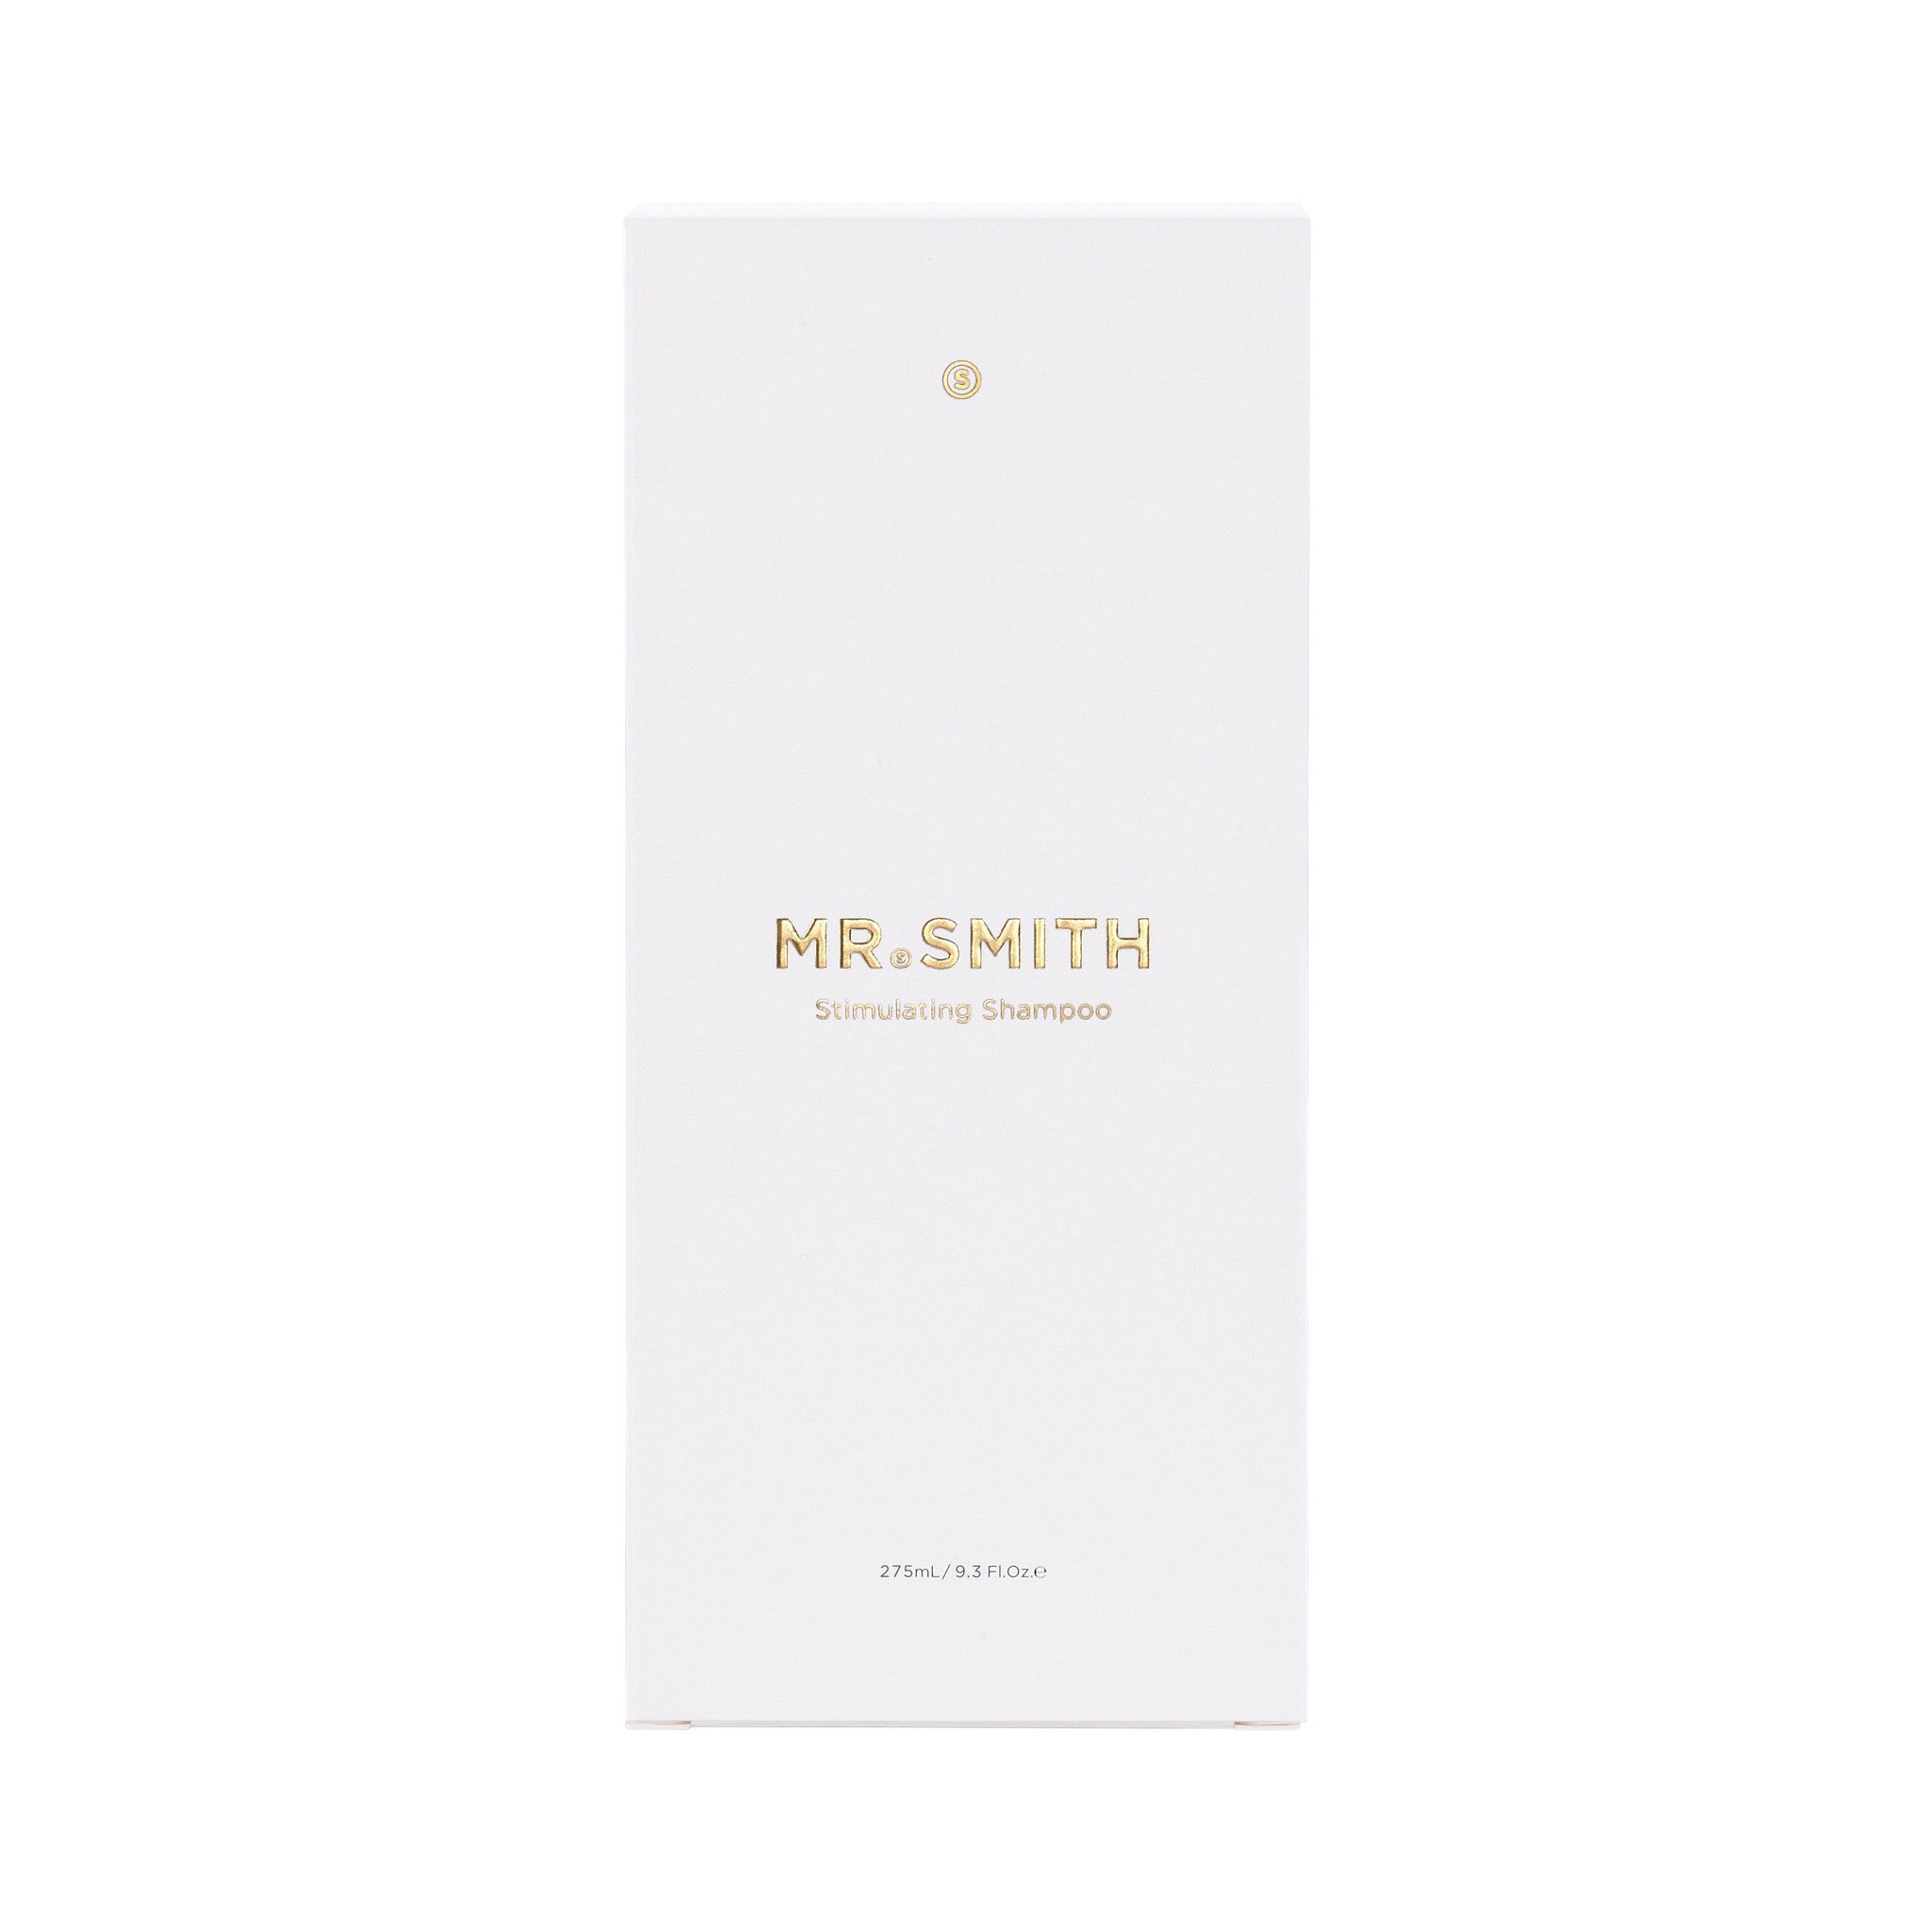 MR. SMITH Stimulating Shampoo - 275ml - laat je haarzakjes ontwaken, om de haargroei te bevorderen